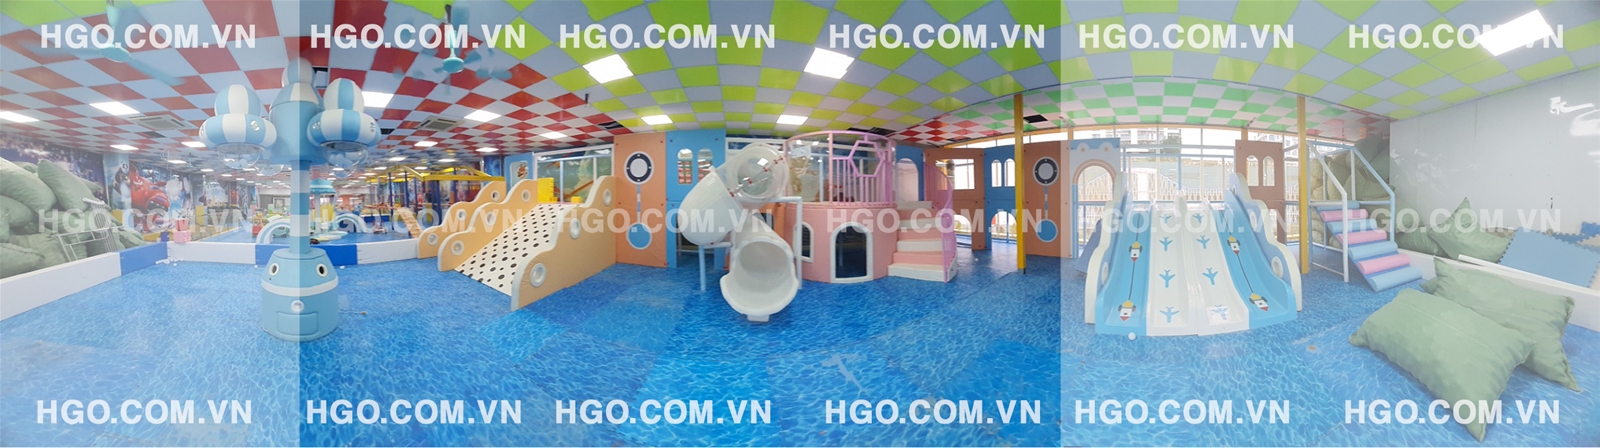 thiết kế khu vui chơi trẻ em HGO